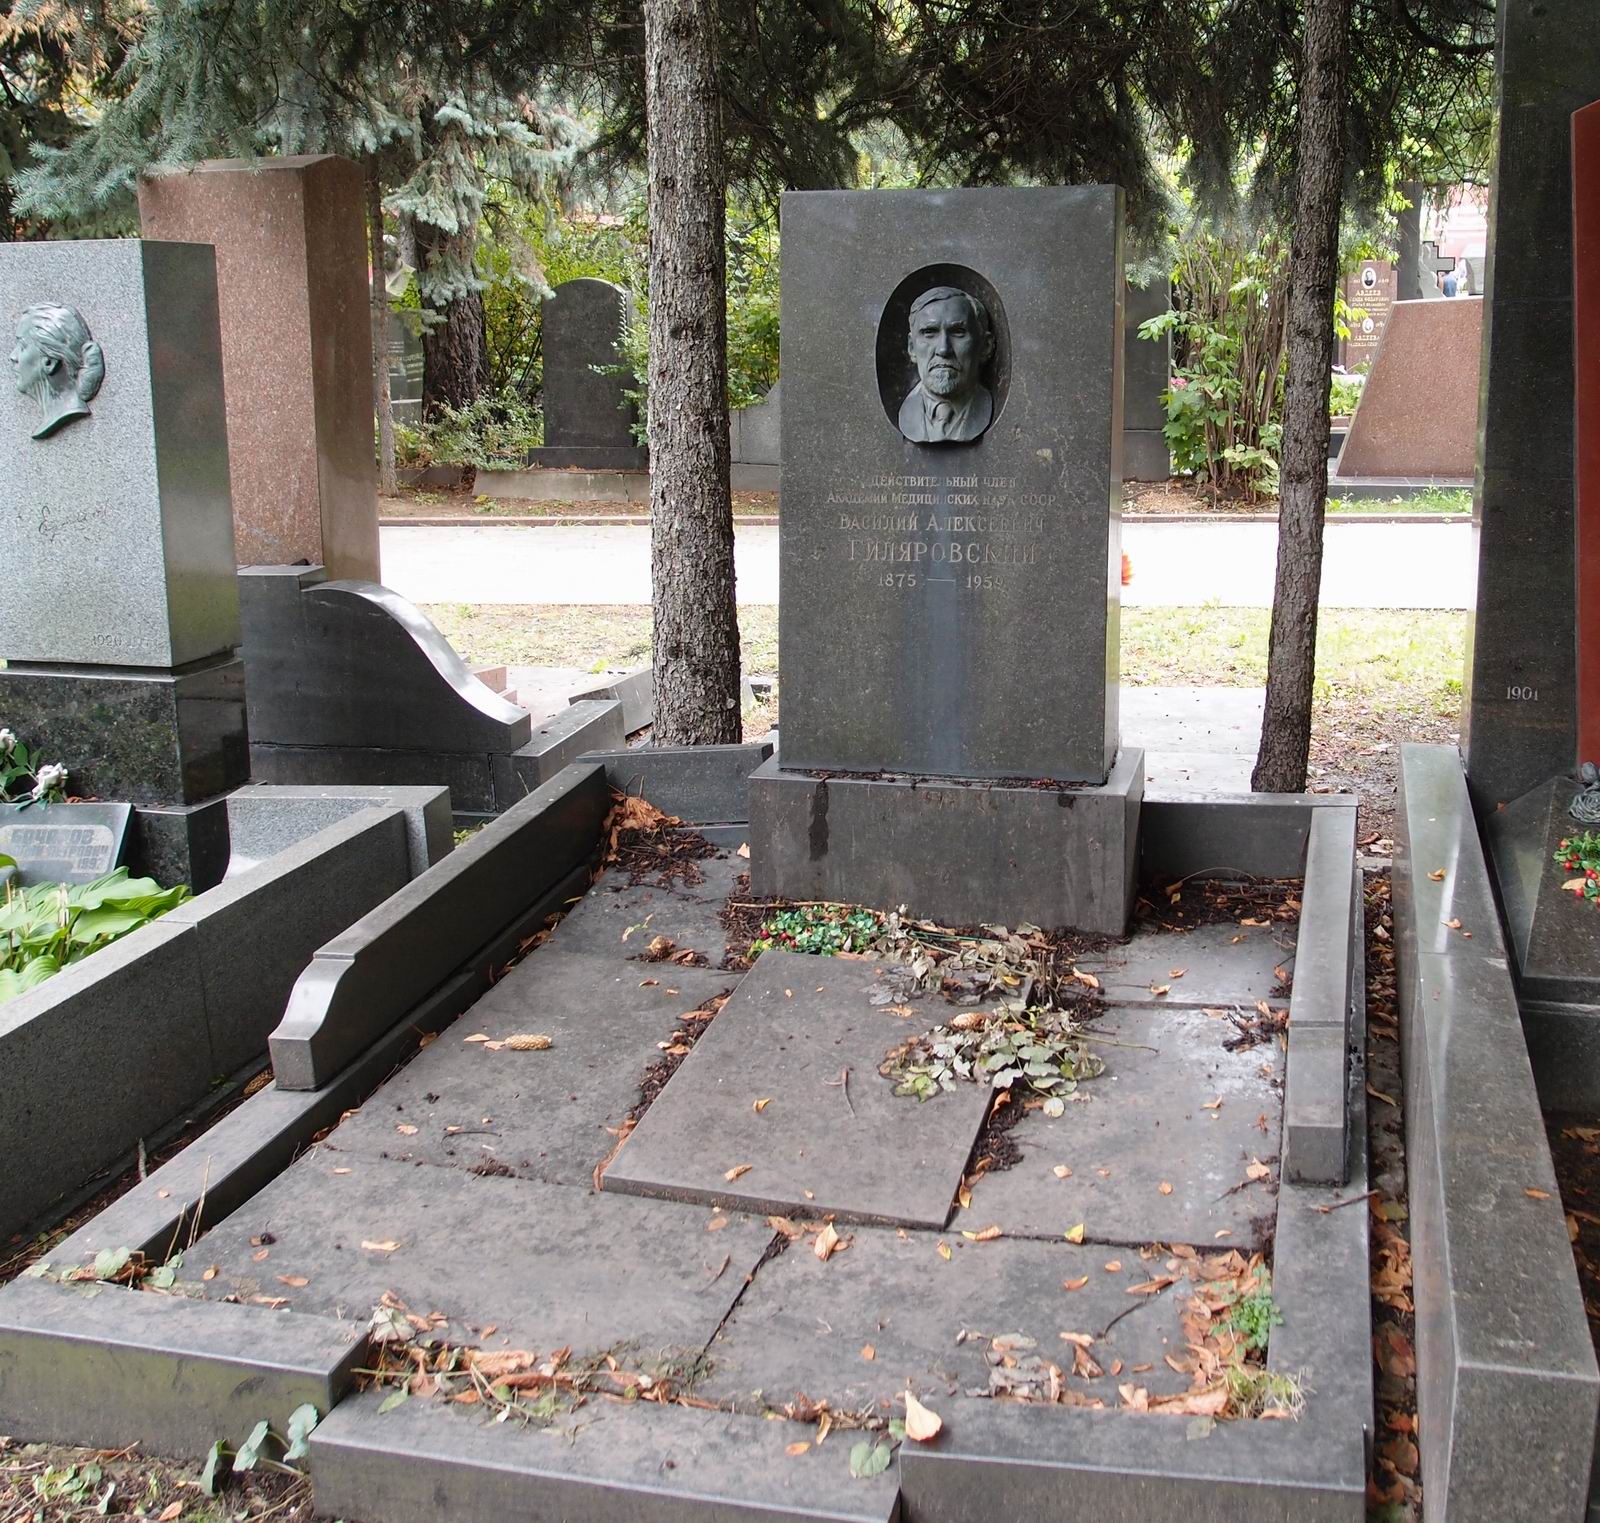 Памятник на могиле Гиляровского В.А. (1875-1959), на Новодевичьем кладбище (5-32-8). Нажмите левую кнопку мыши чтобы увидеть фрагмент памятника.